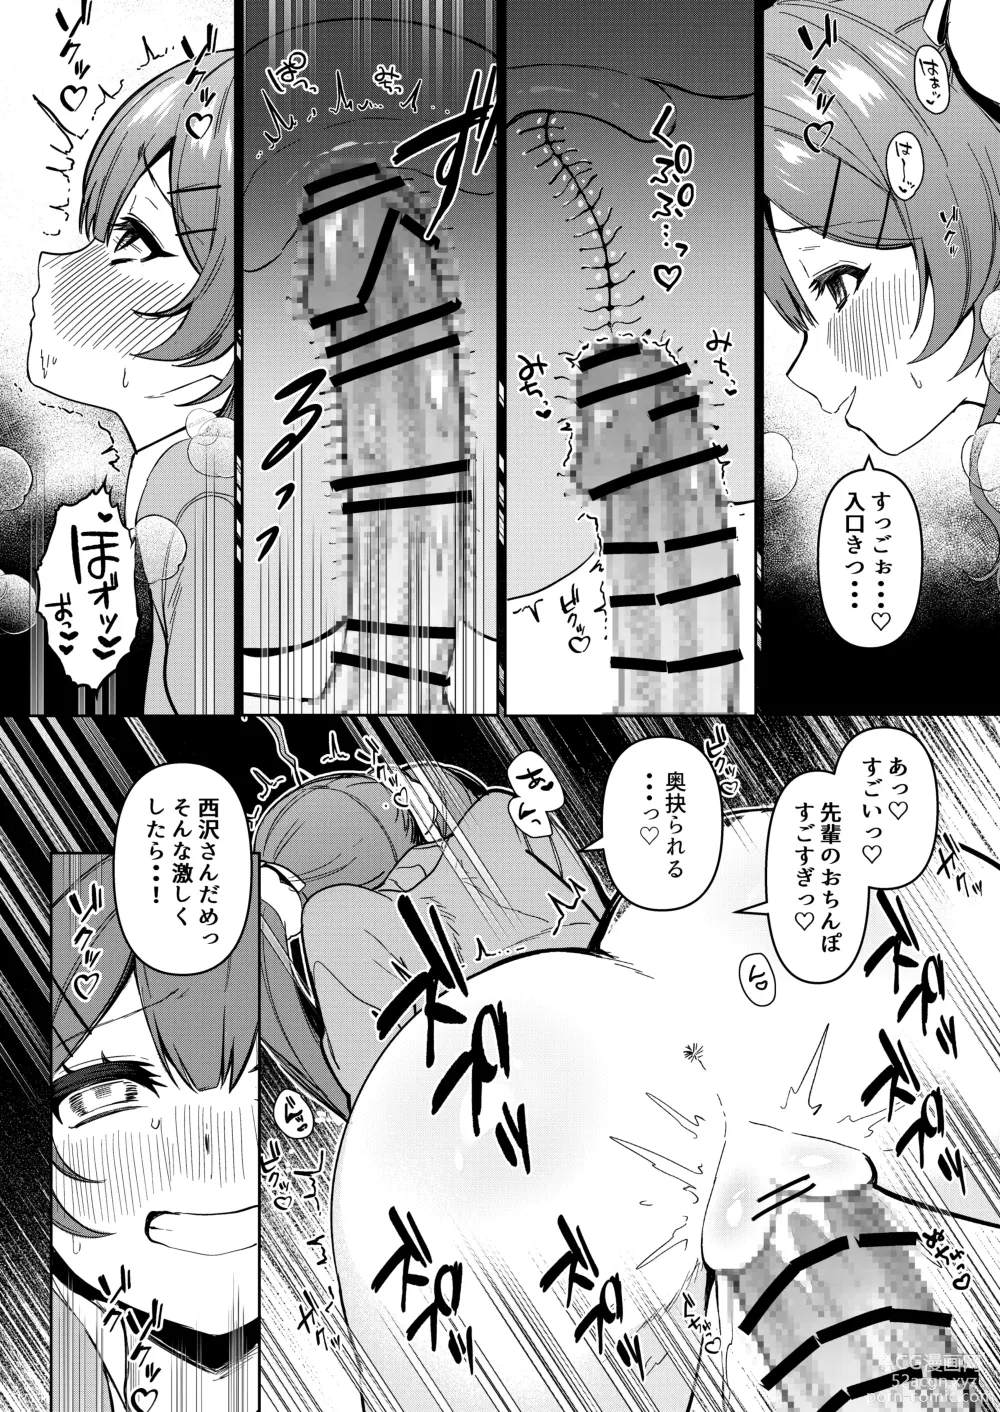 Page 11 of doujinshi Junyoku